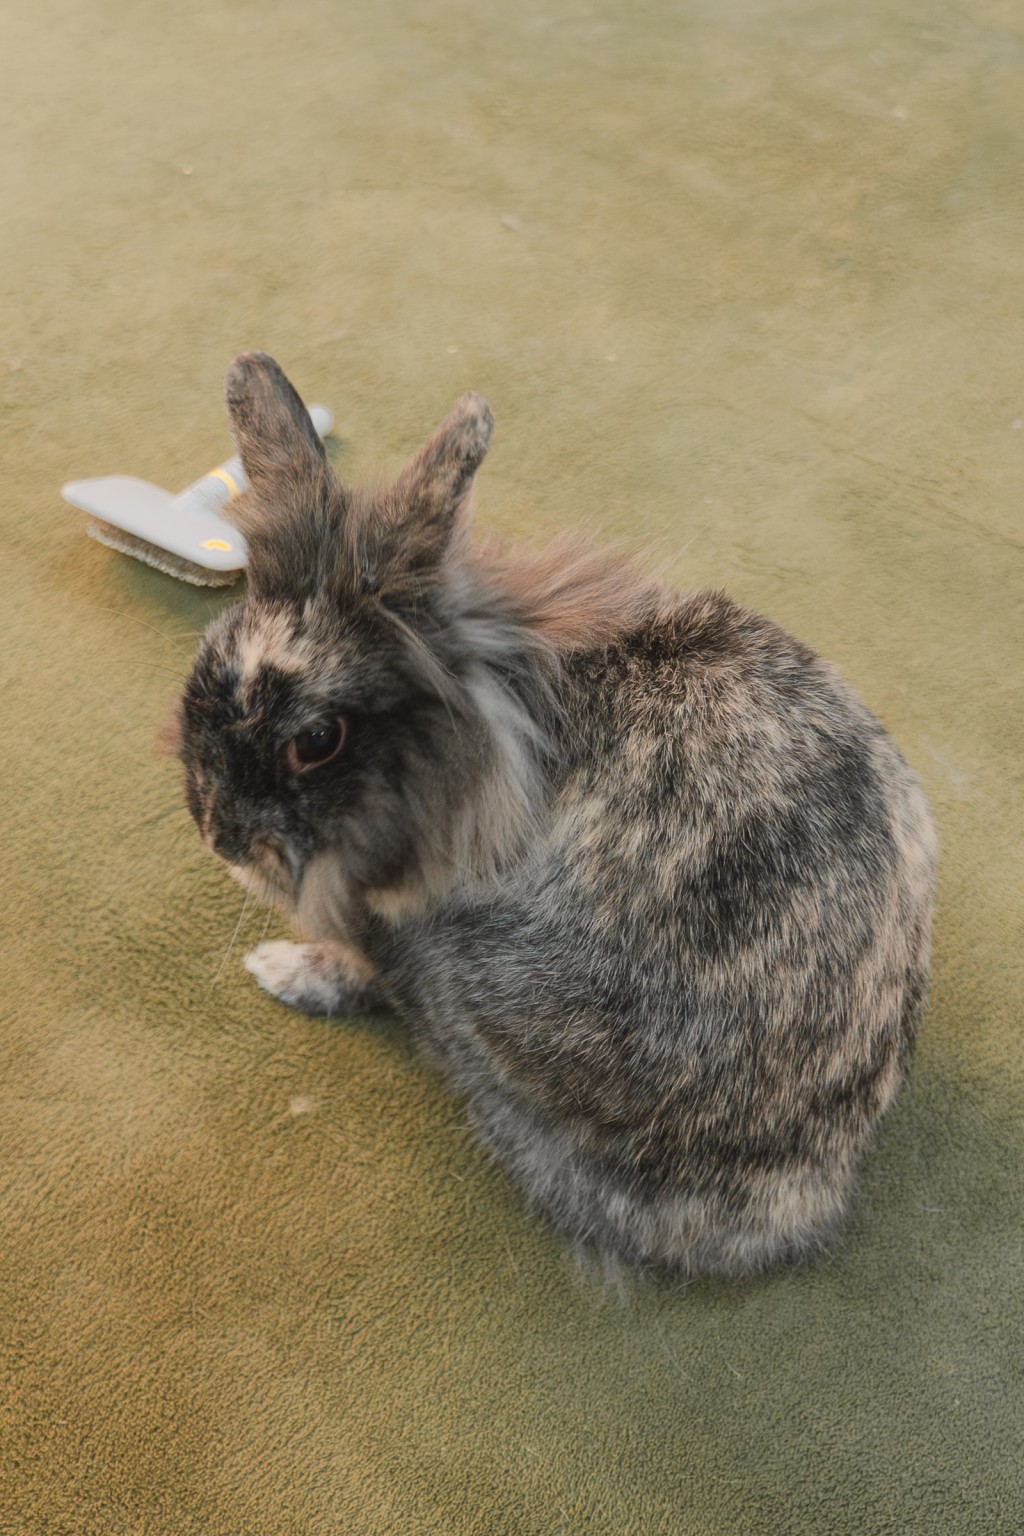 到养到大约一岁左右，发现养兔子很麻烦或加上生病而弃养。